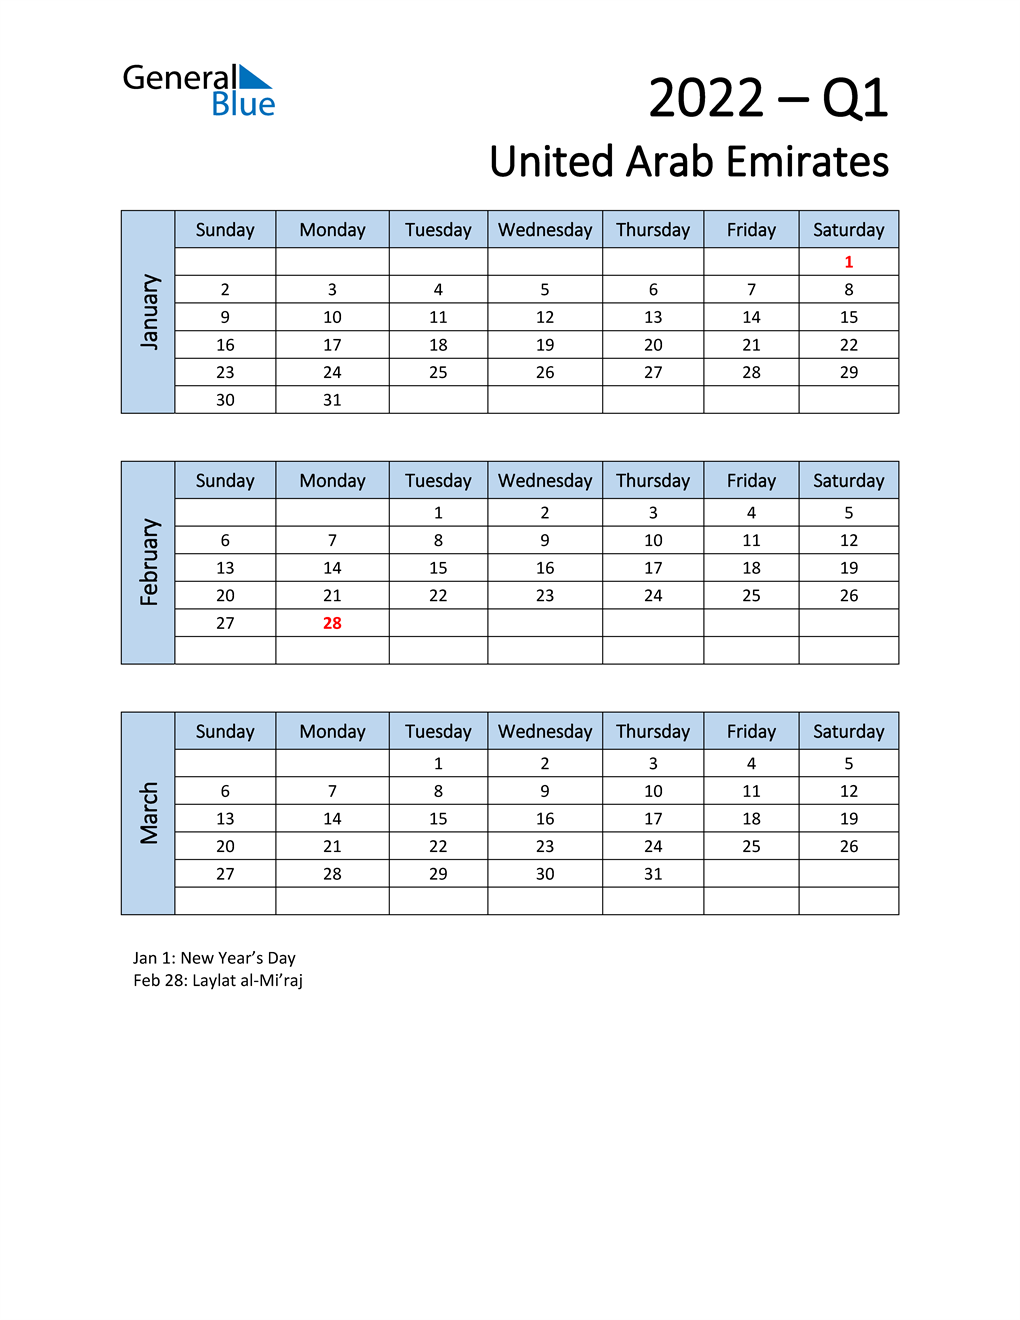  Free Q1 2022 Calendar for United Arab Emirates